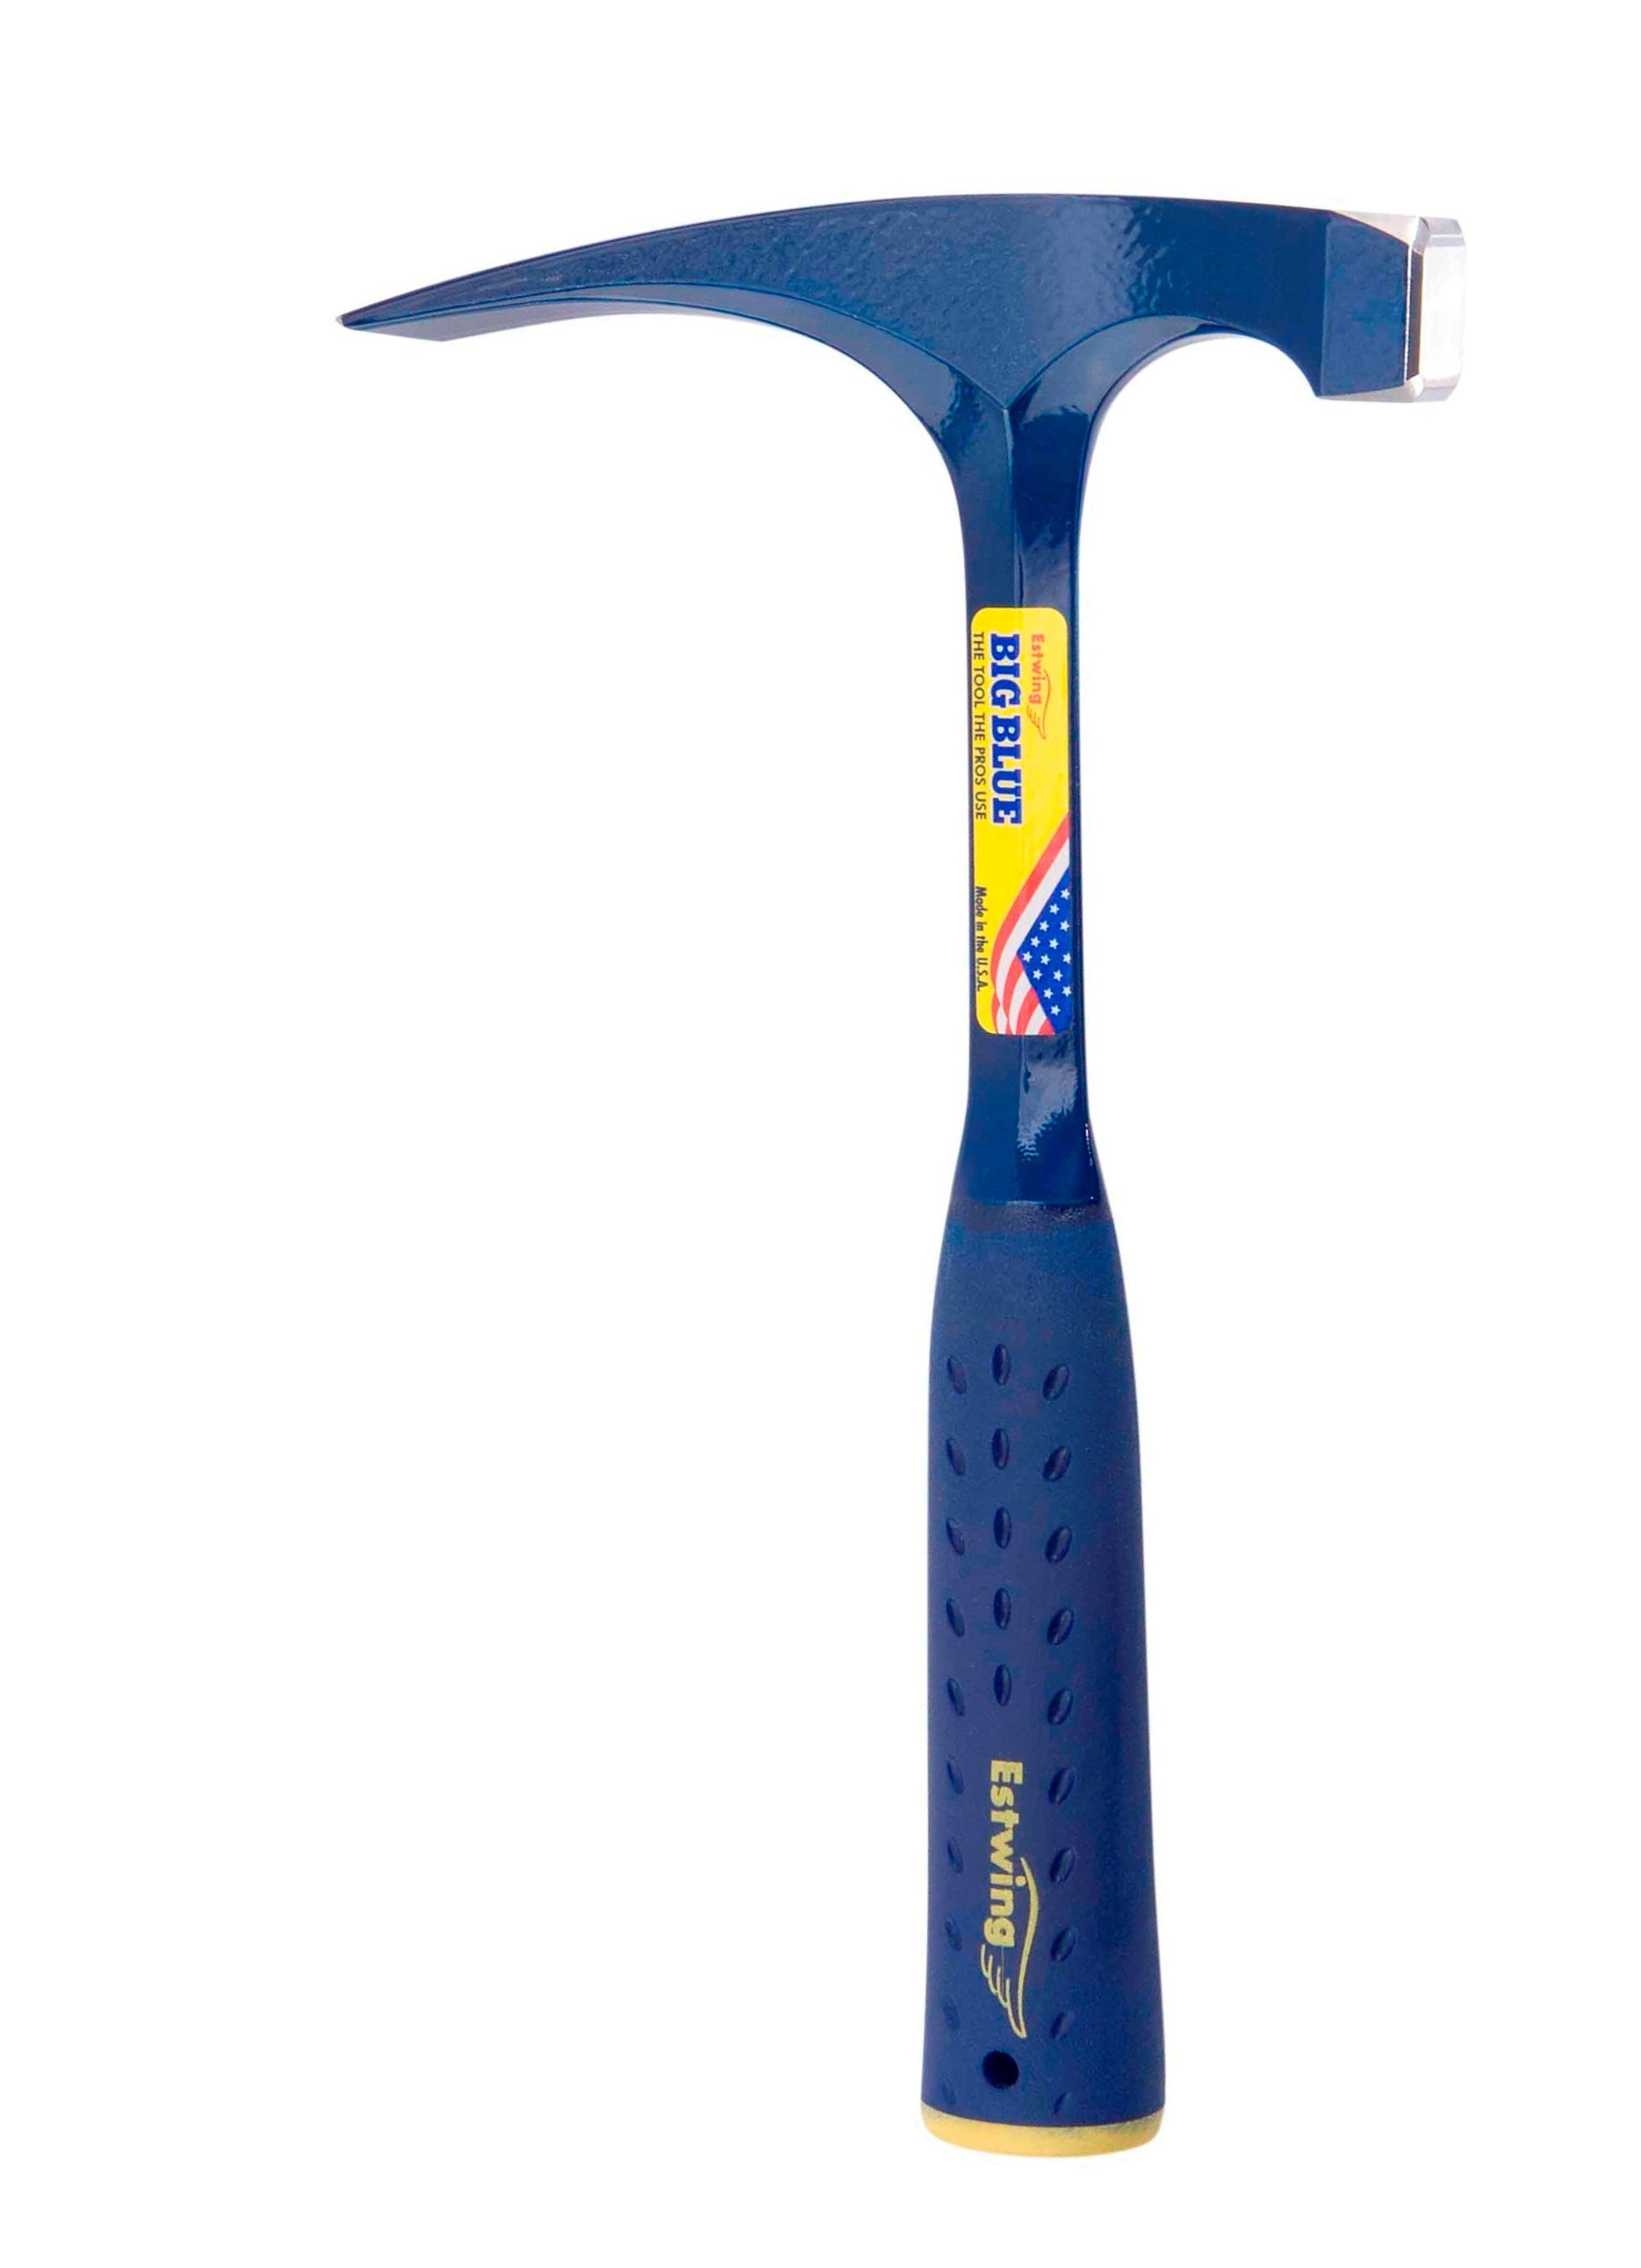 Estwing Hammer ESTWING Schürfhammer Big Blue mit Vinylgriff, 25x25mm 615g, glatte Bahn